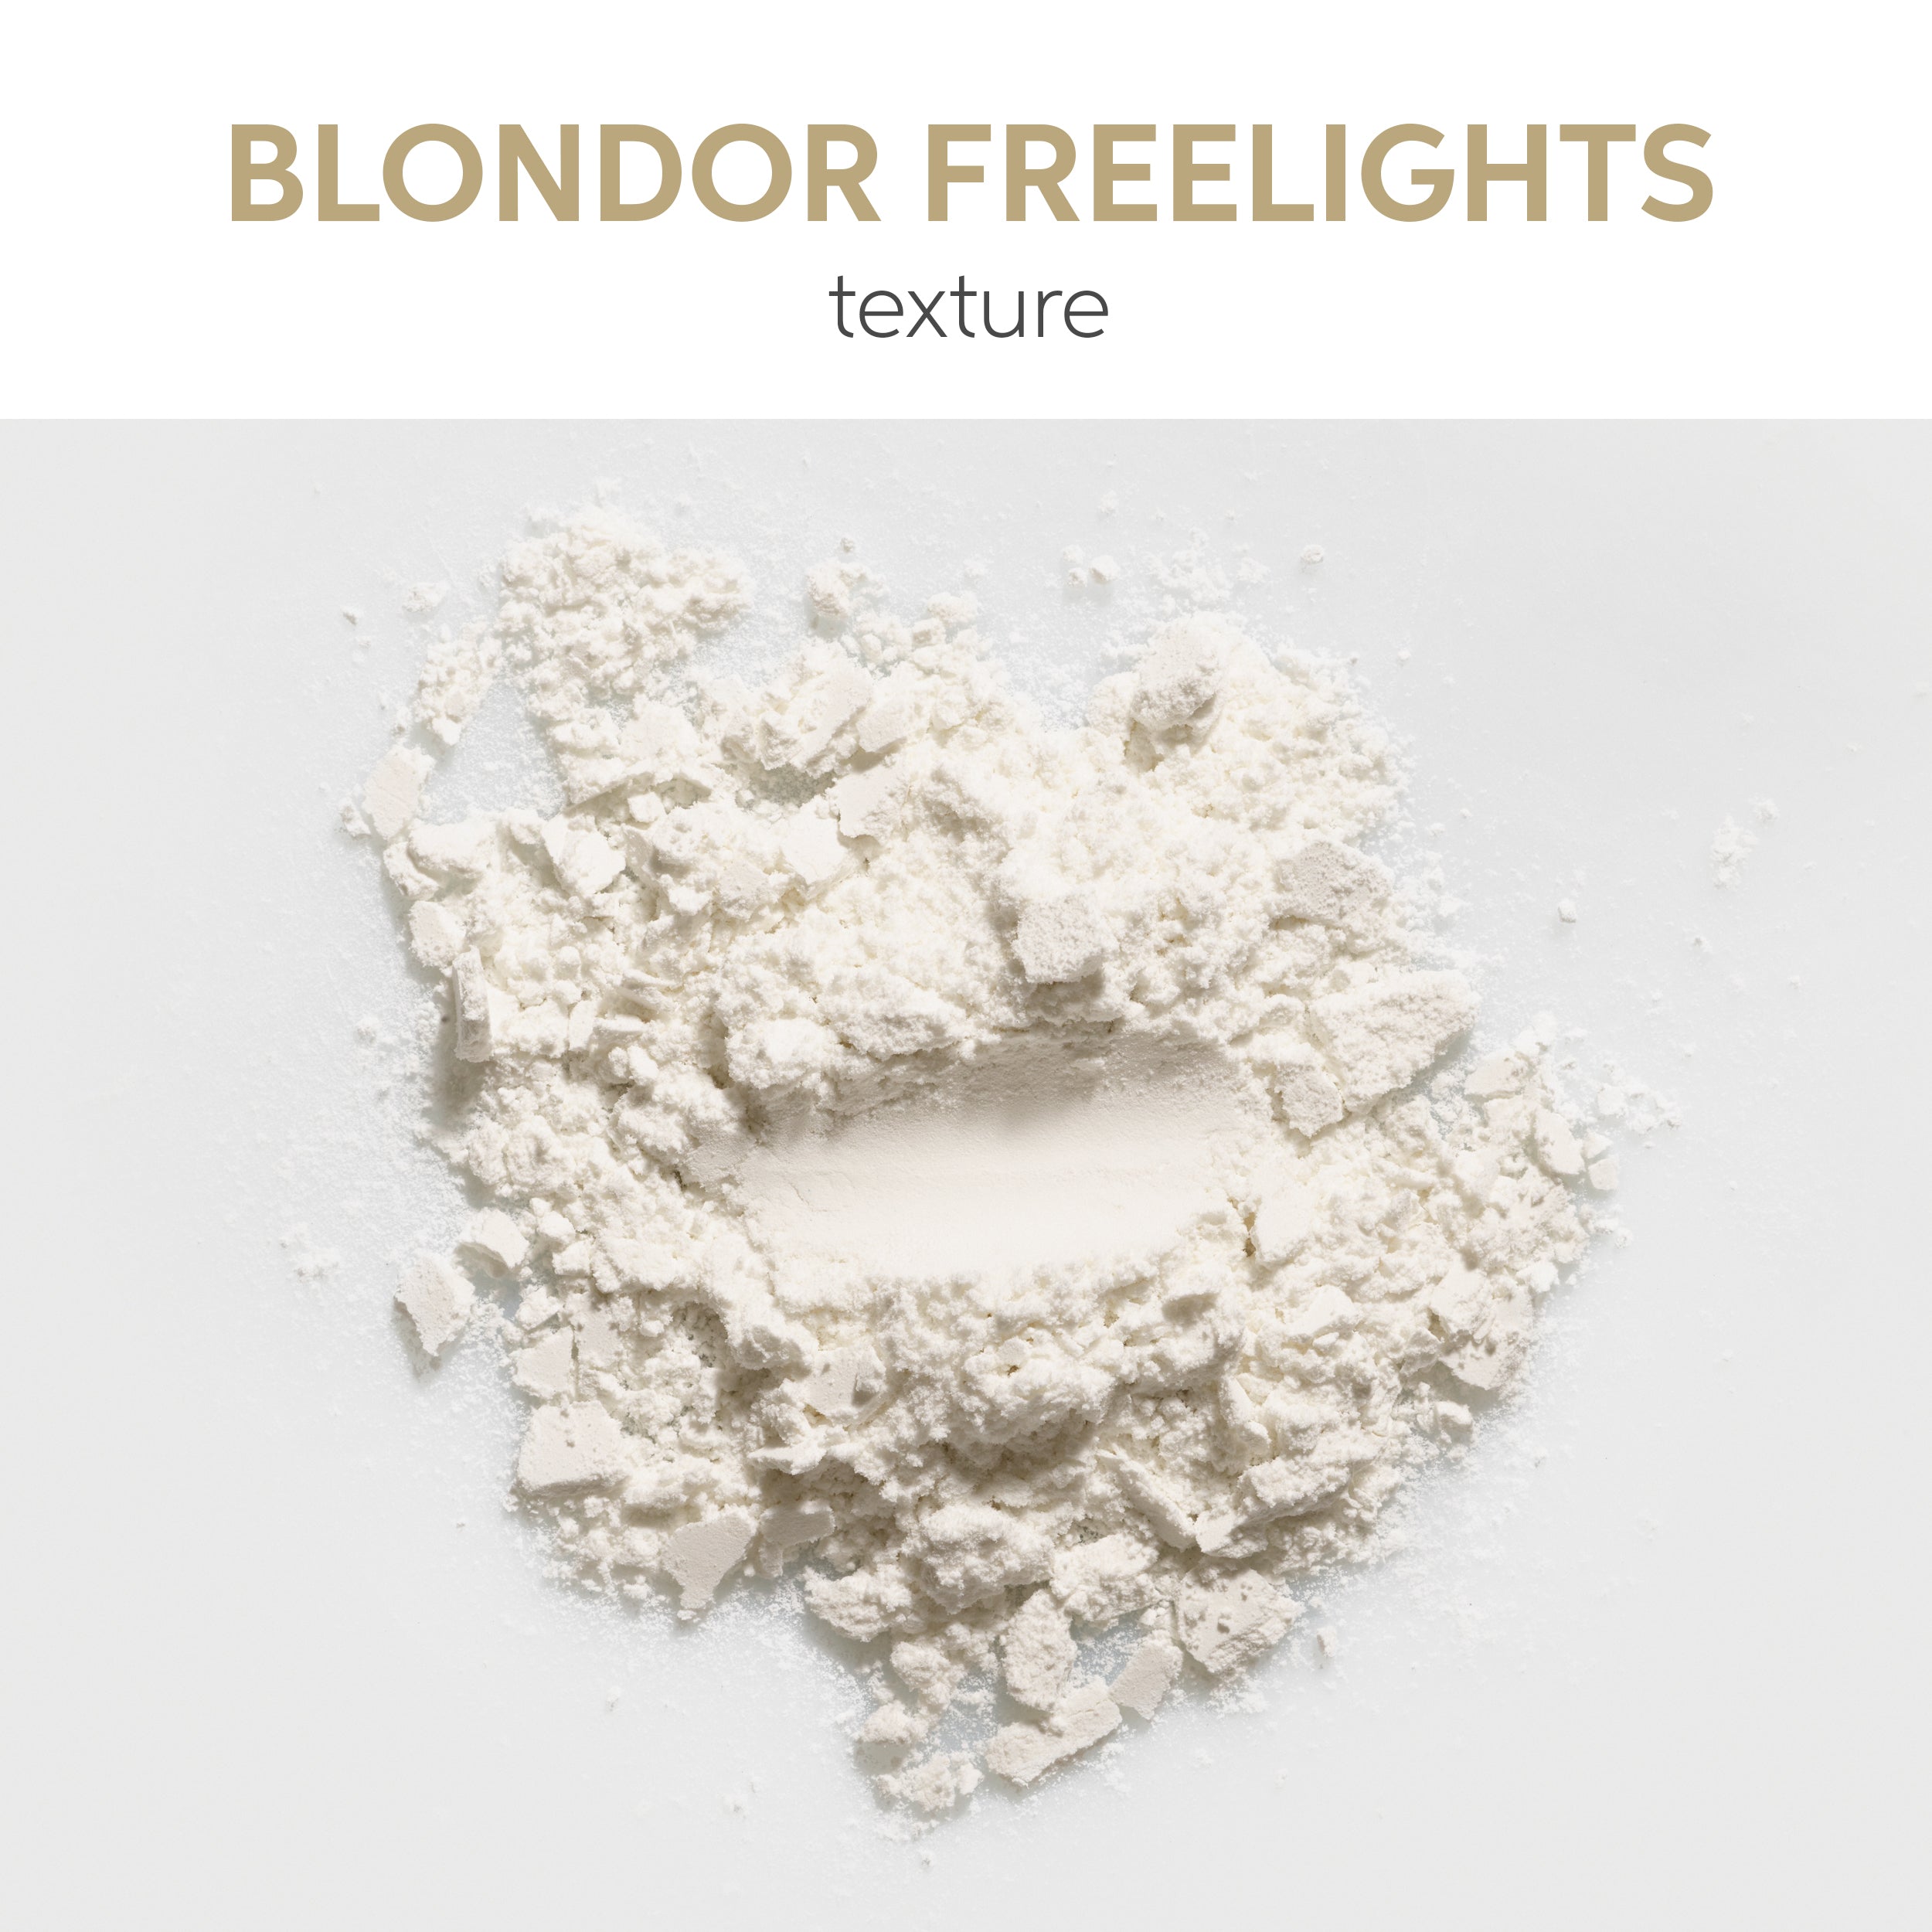 Wella Blondor Freelights Powder 400g